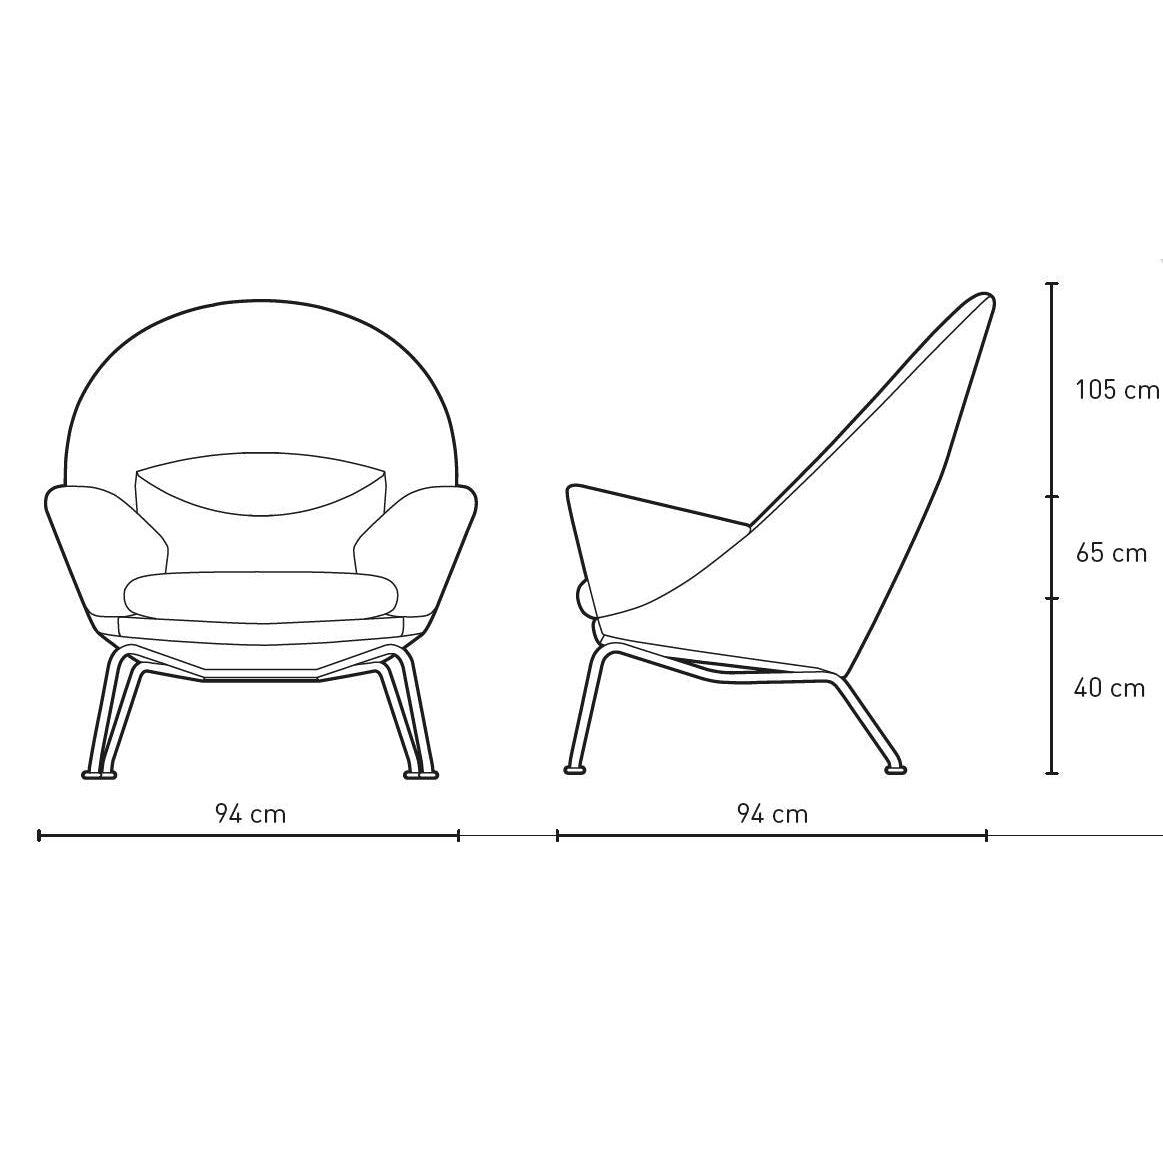 Carl Hansen CH468 Oculus Chair, Stahl /dunkelgrauer Stoff